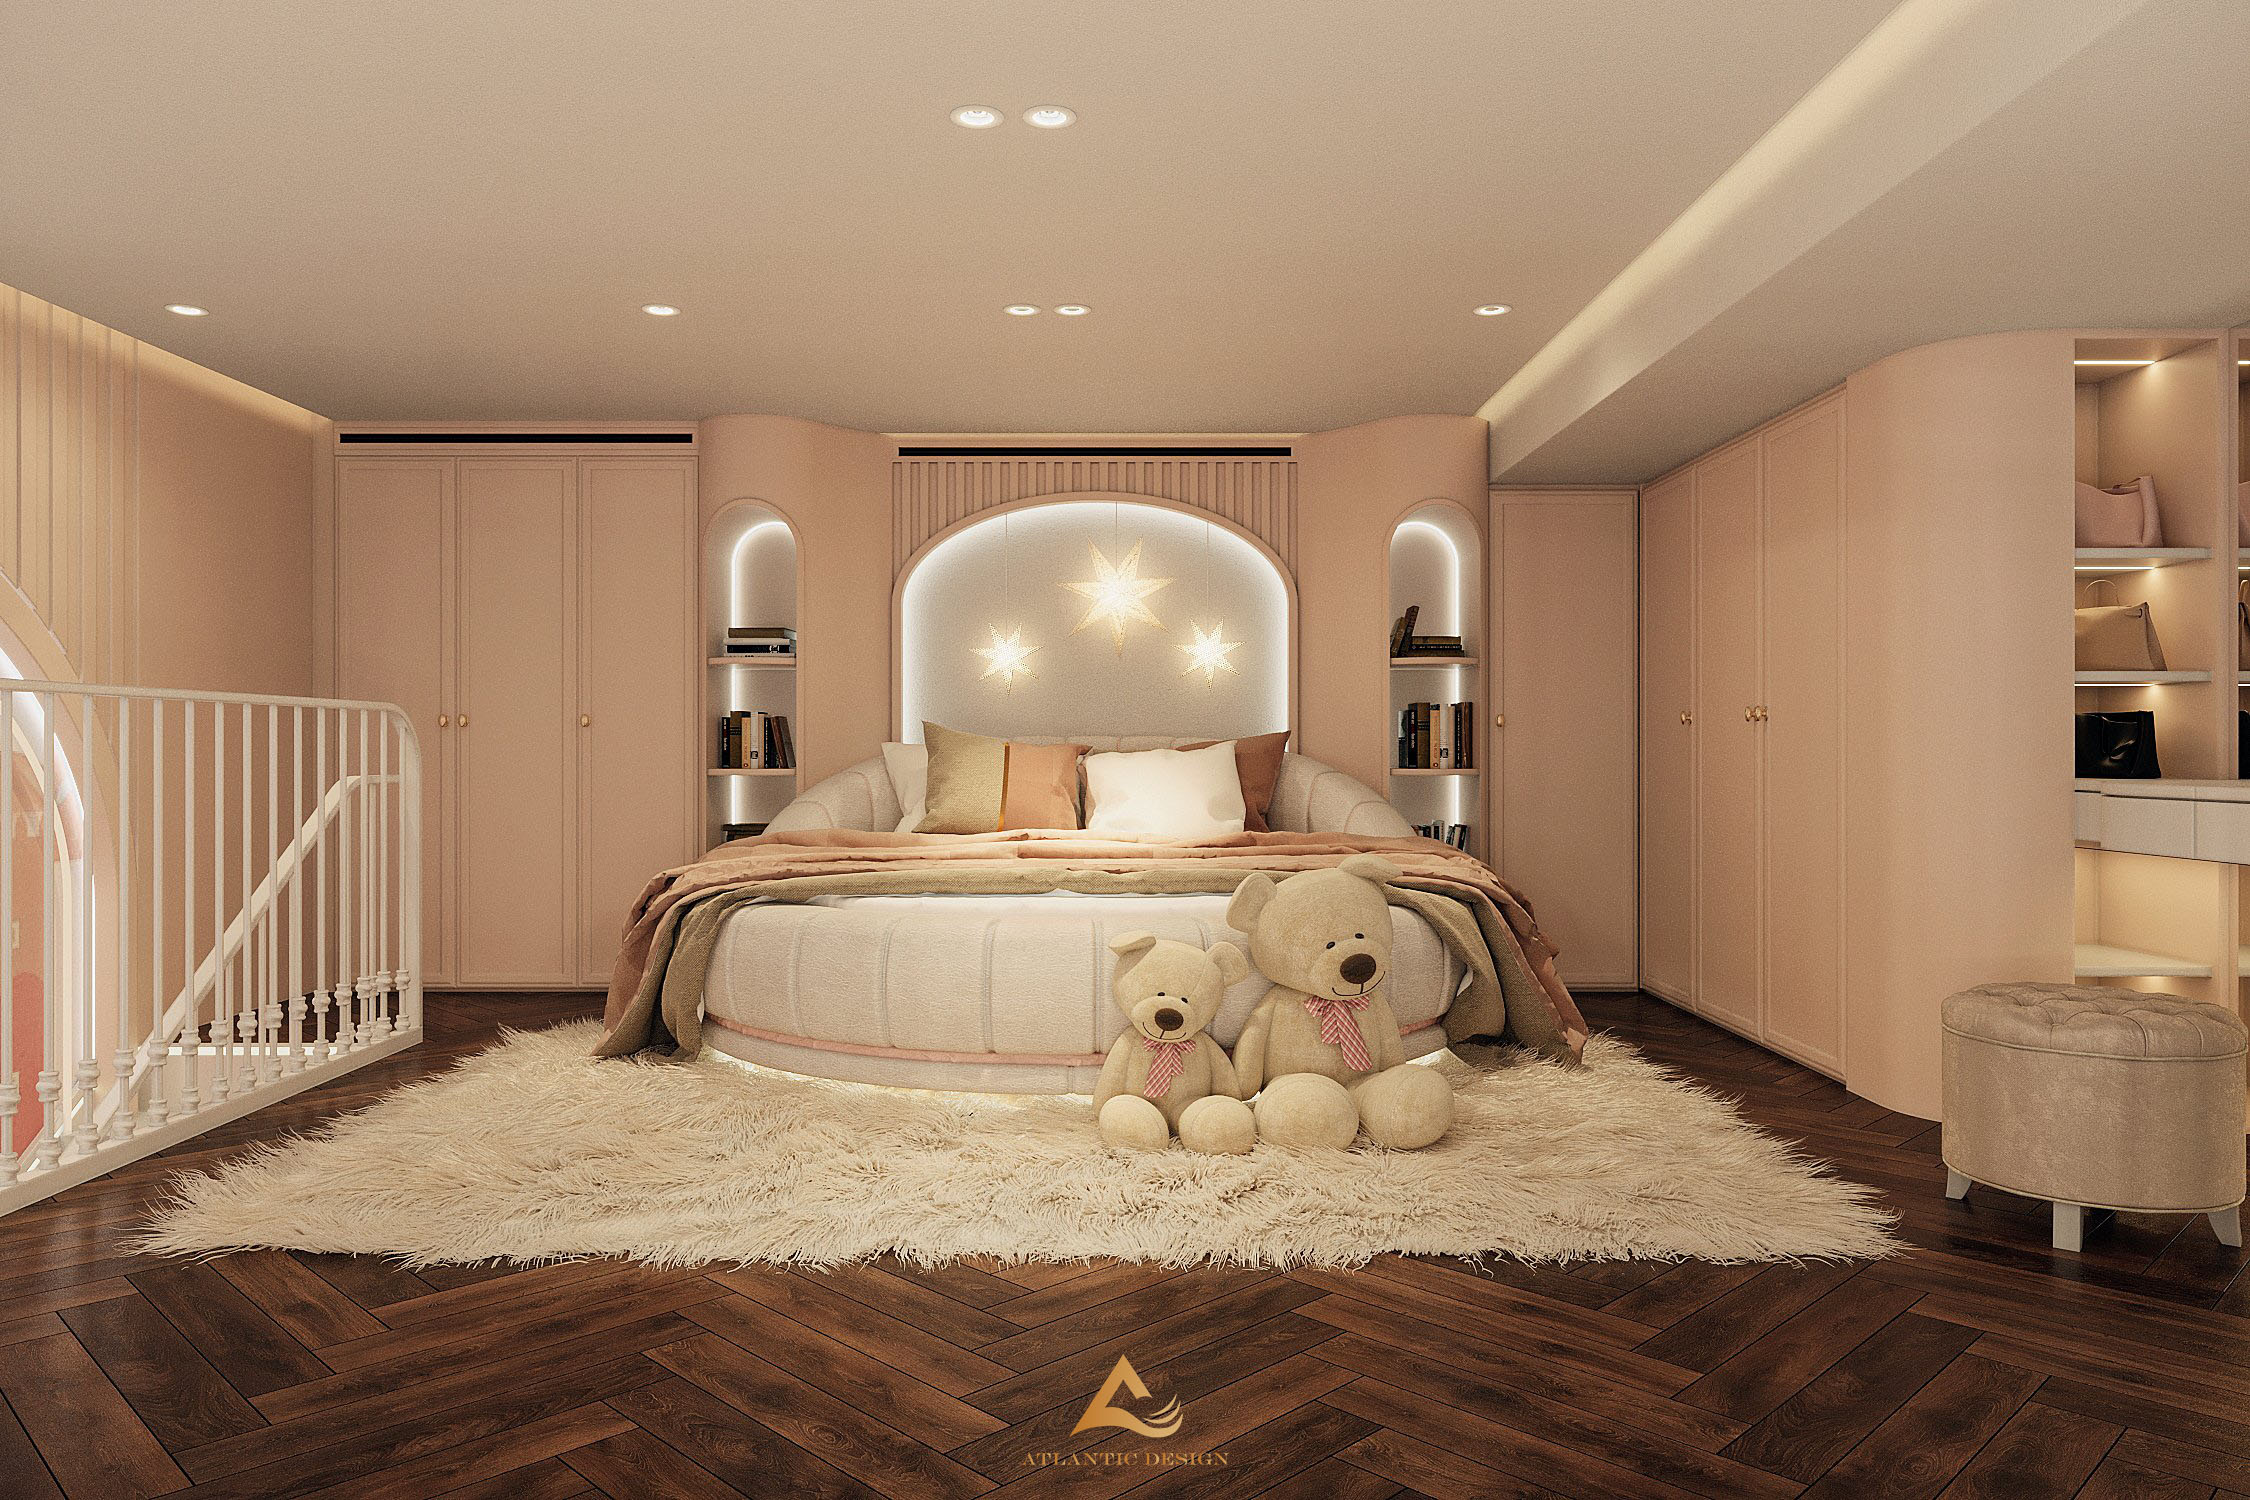 Giường ngủ thiết kế hình tròn đặc biệt, giúp bố cục tầng lửng trở nên hài hòa